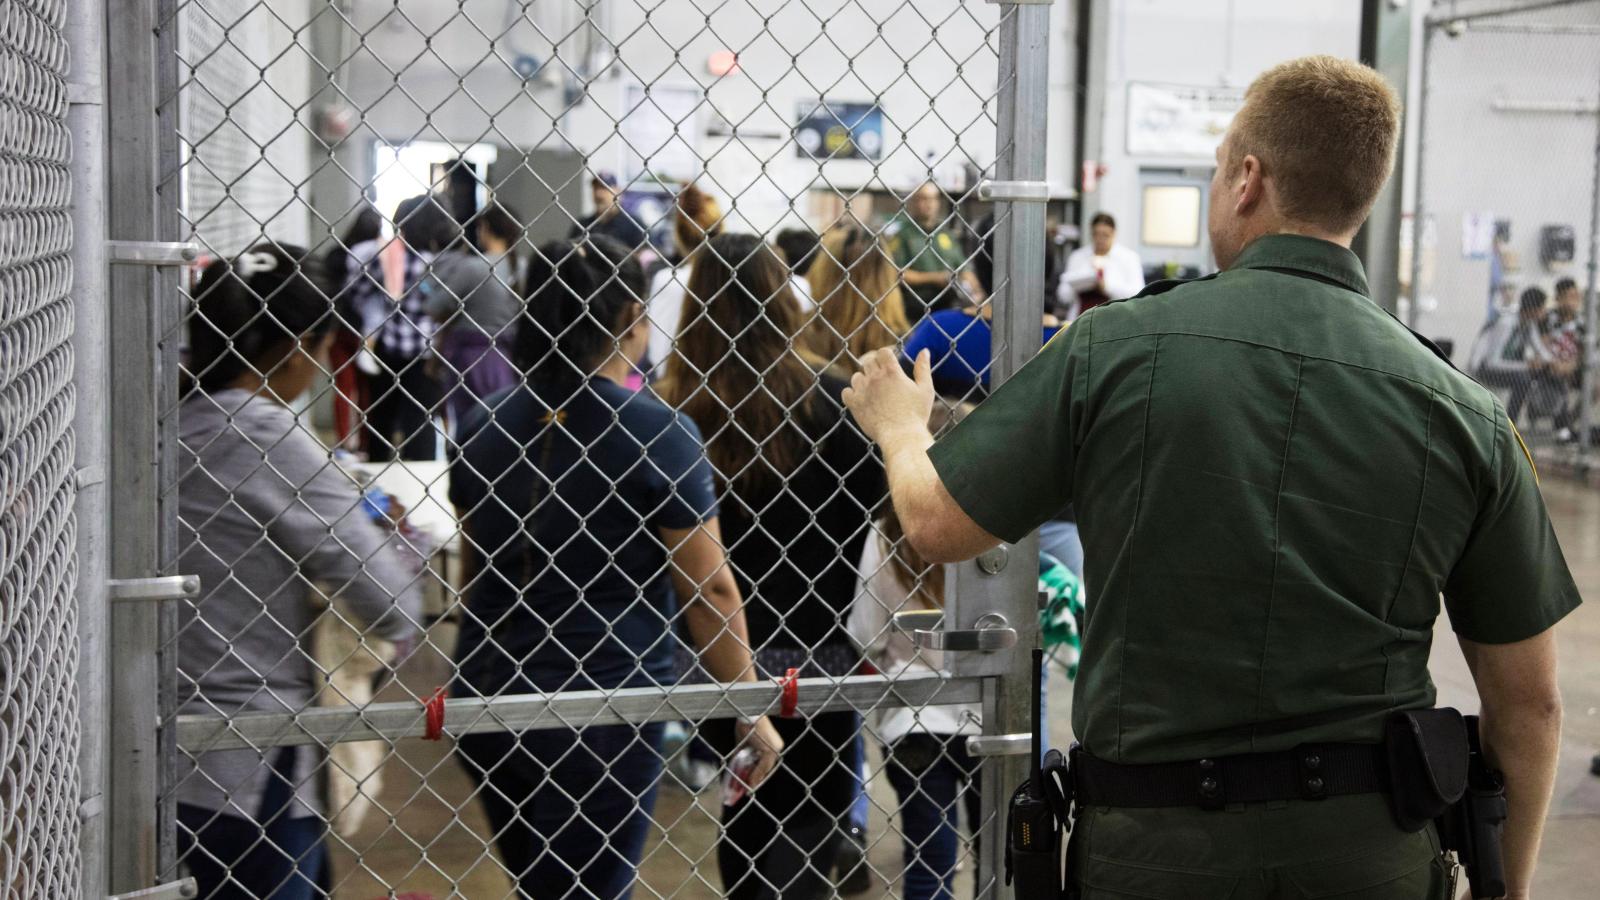 ΗΠΑ: Θα παίρνουν δείγματα DNA από τους παράνομους μετανάστες